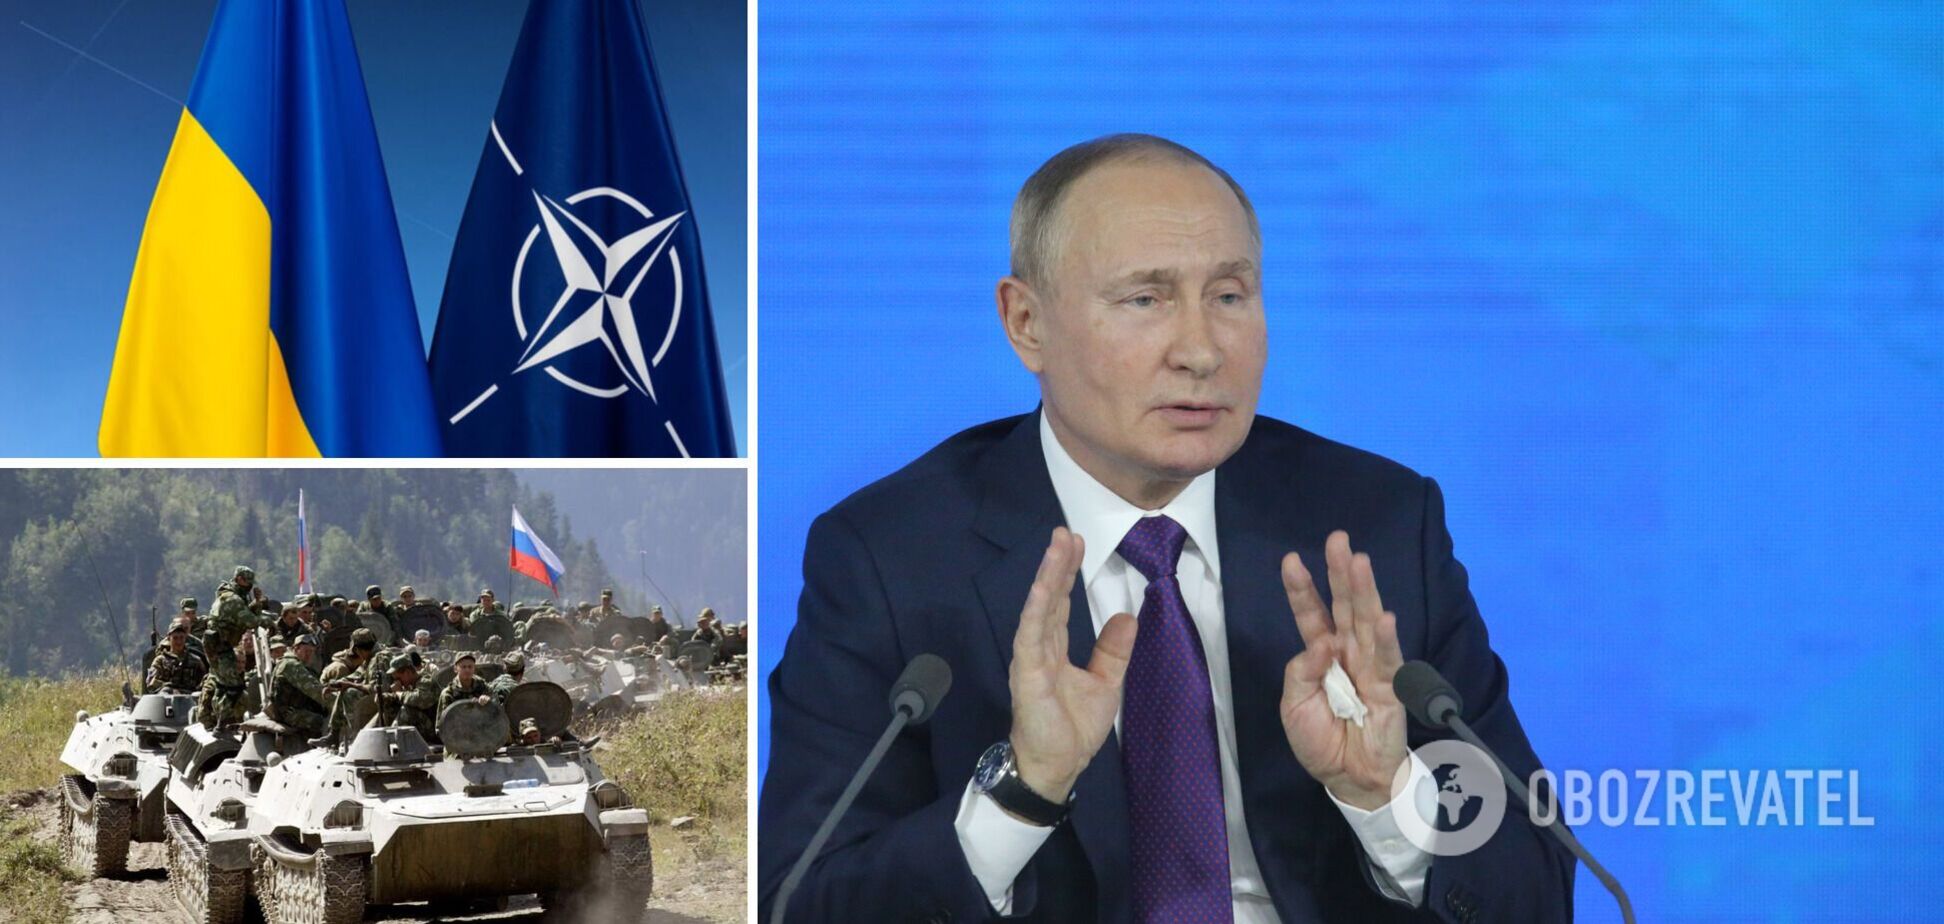 Путин боится успешной Украины, считают эксперты на Западе